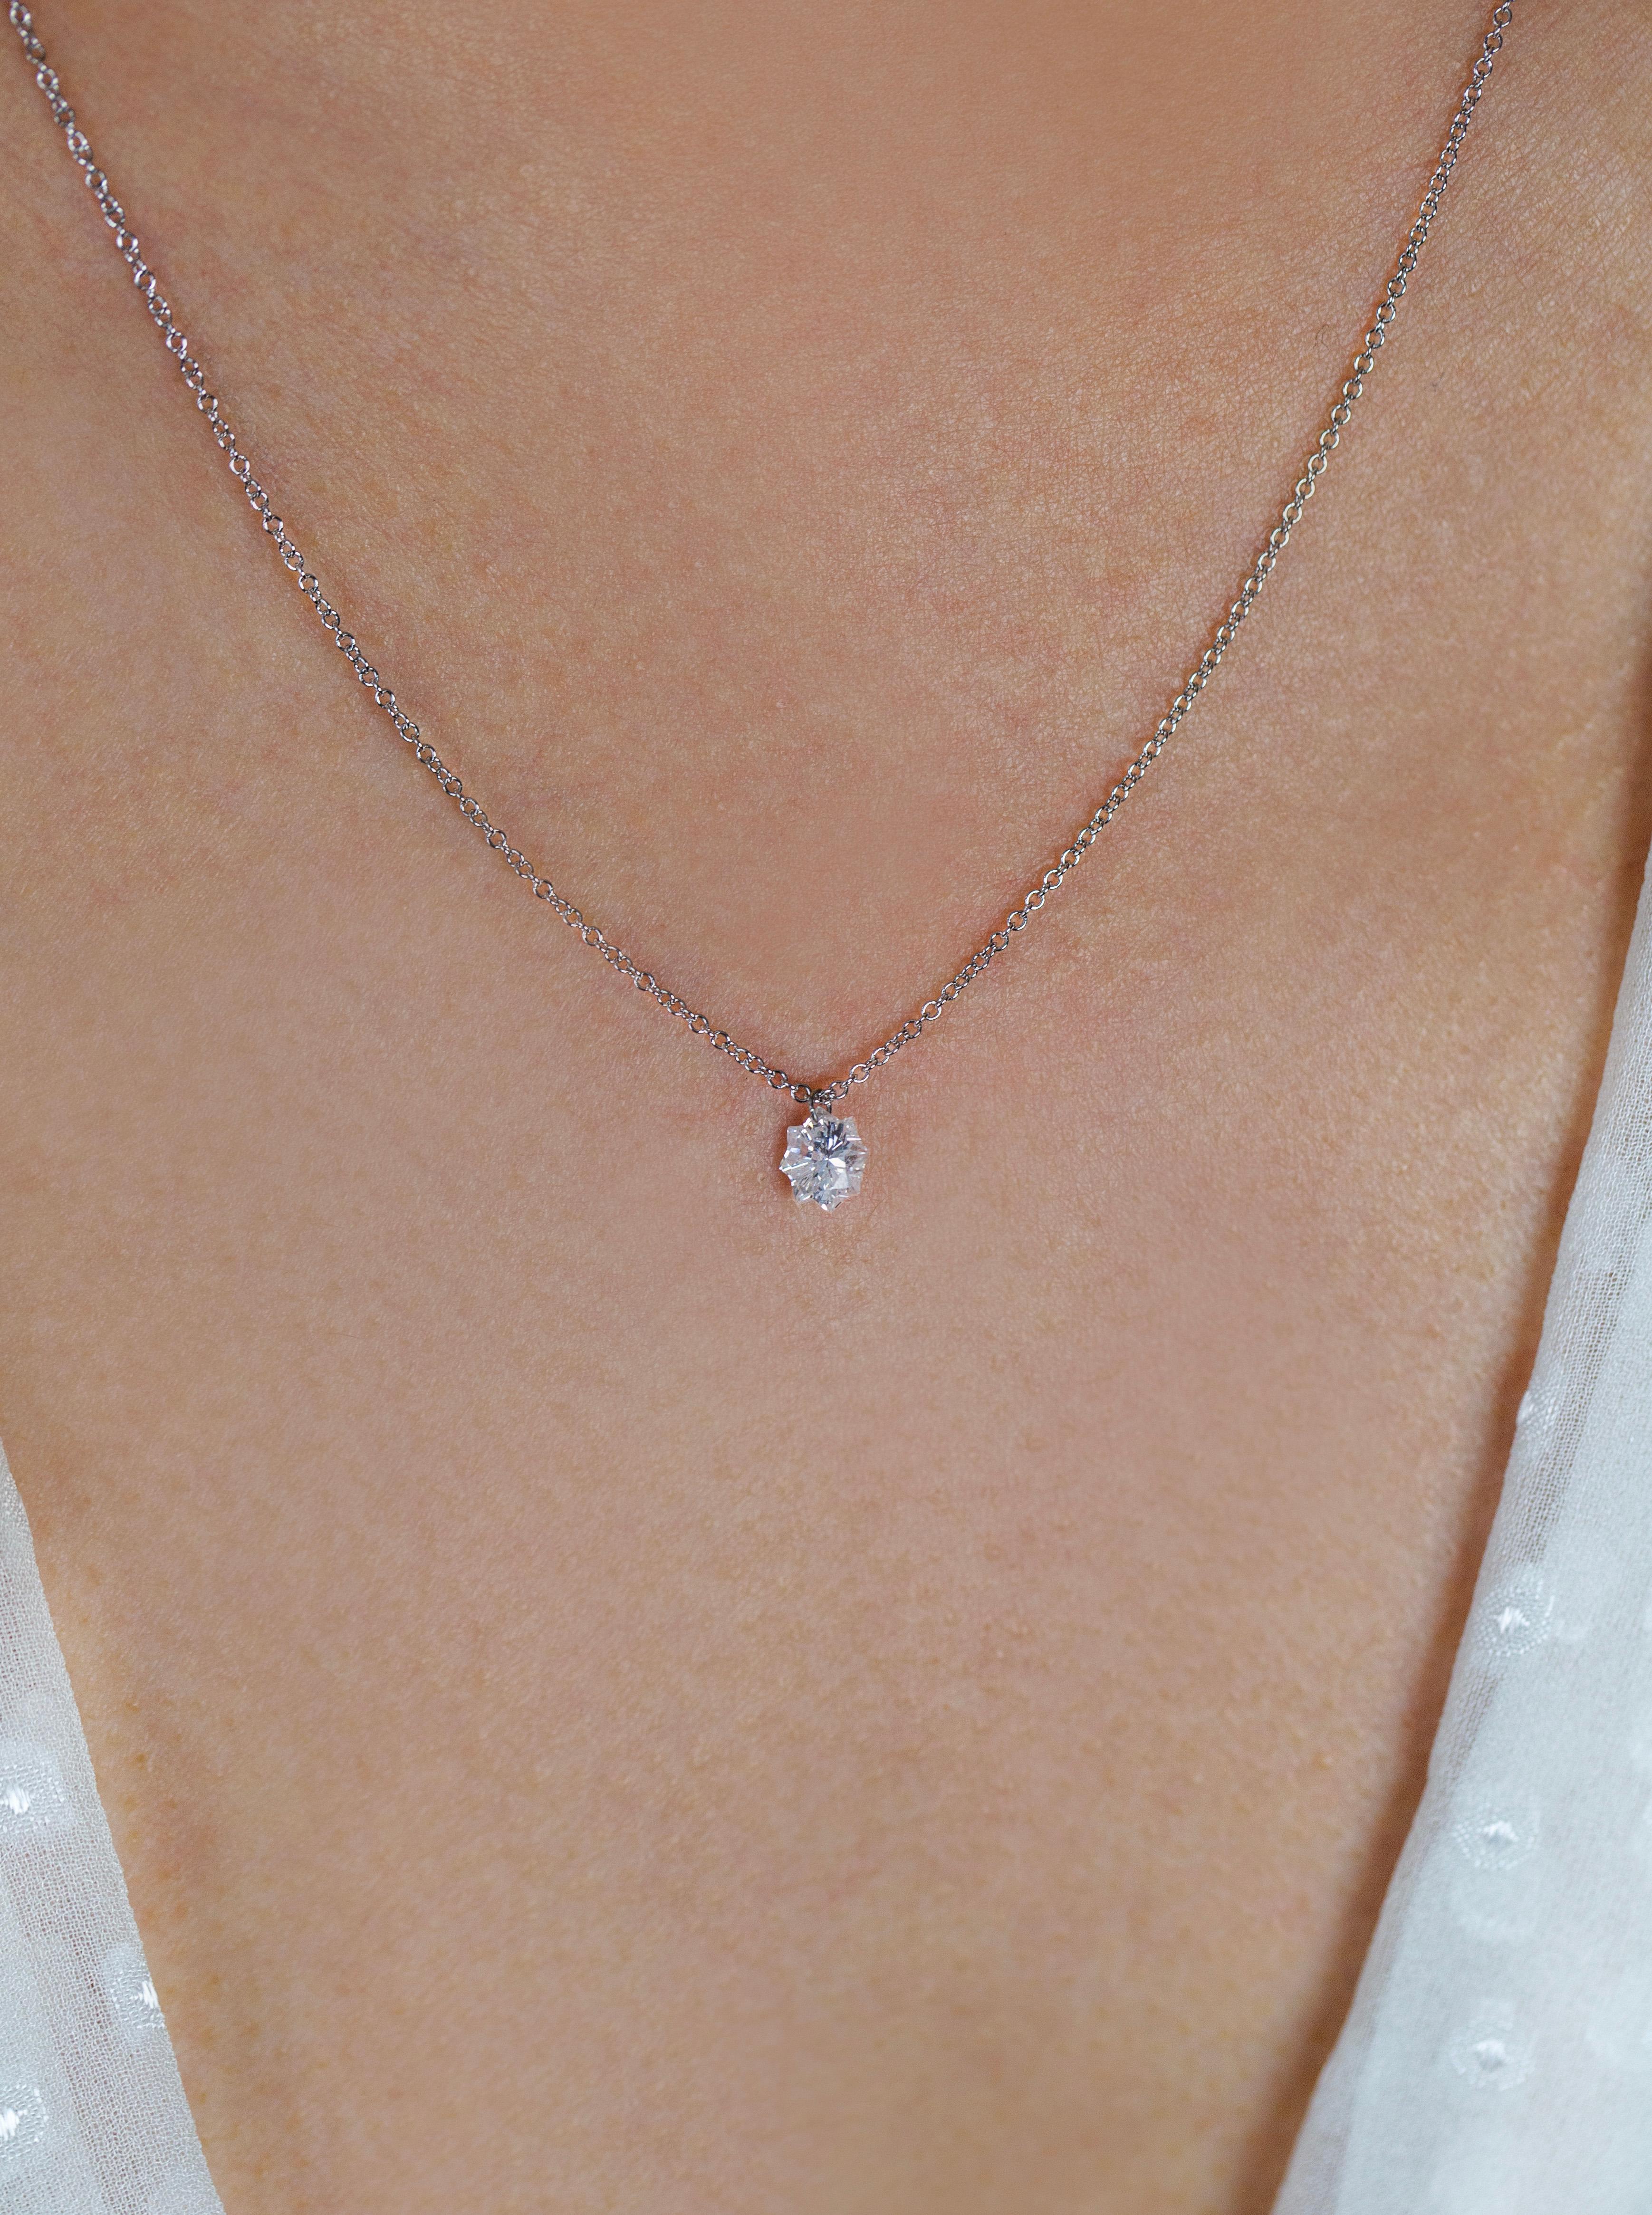 cartier diamants legers necklace size comparison